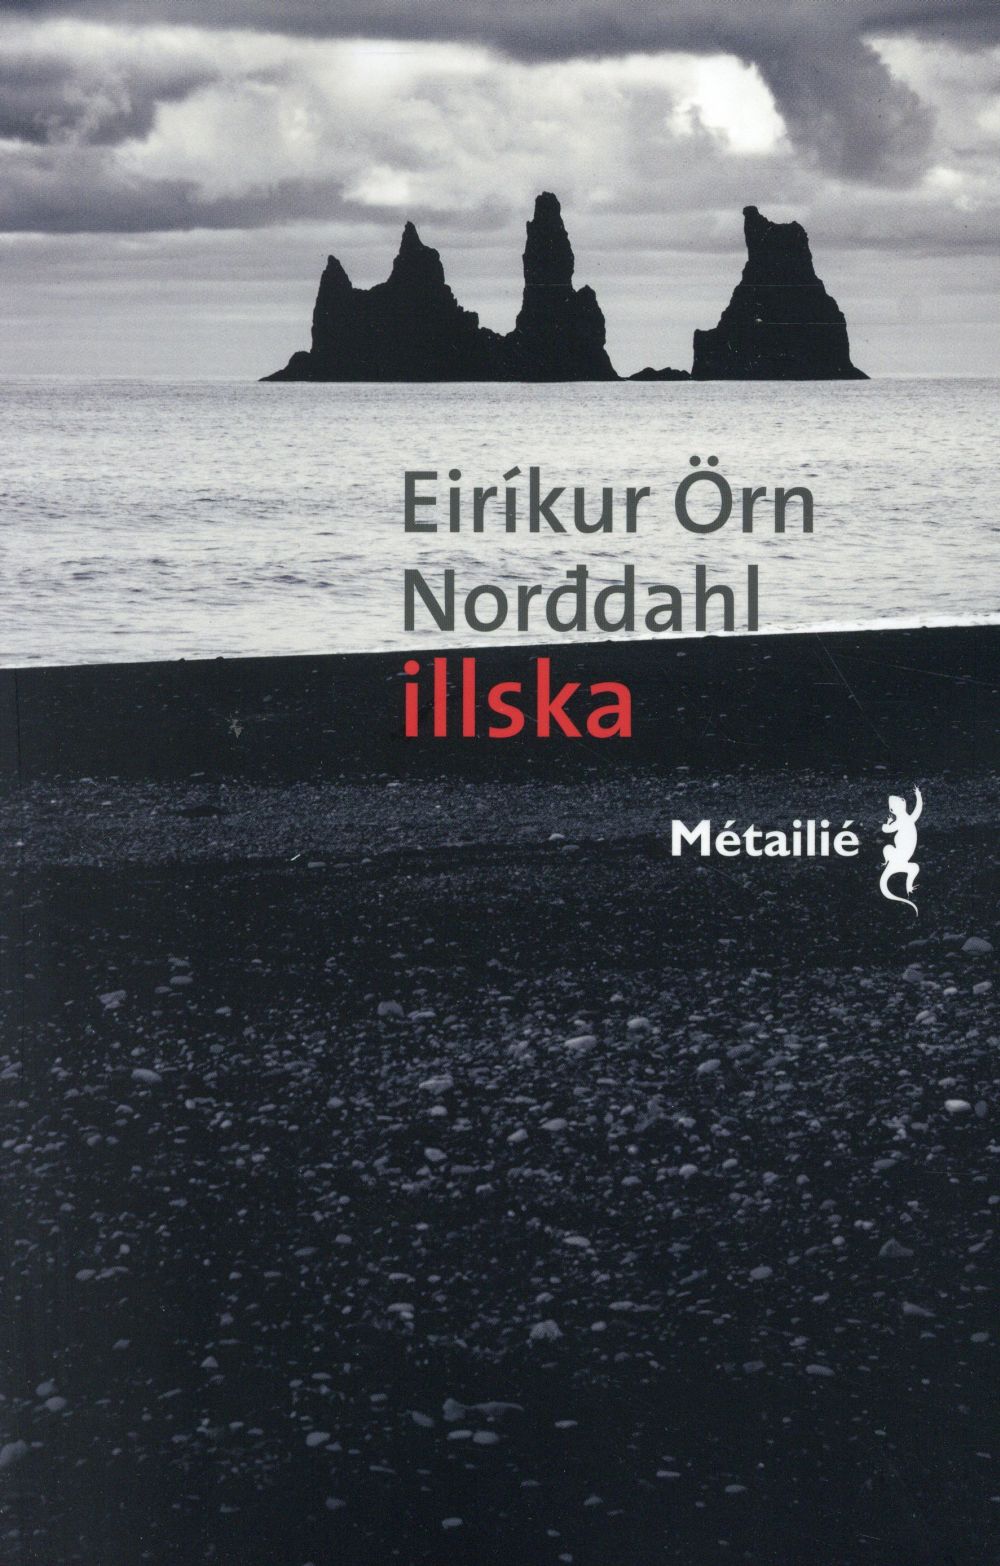 La #Critique Pour/Contre des Explorateurs : "Illska" de Eirikur Örn Norddahl